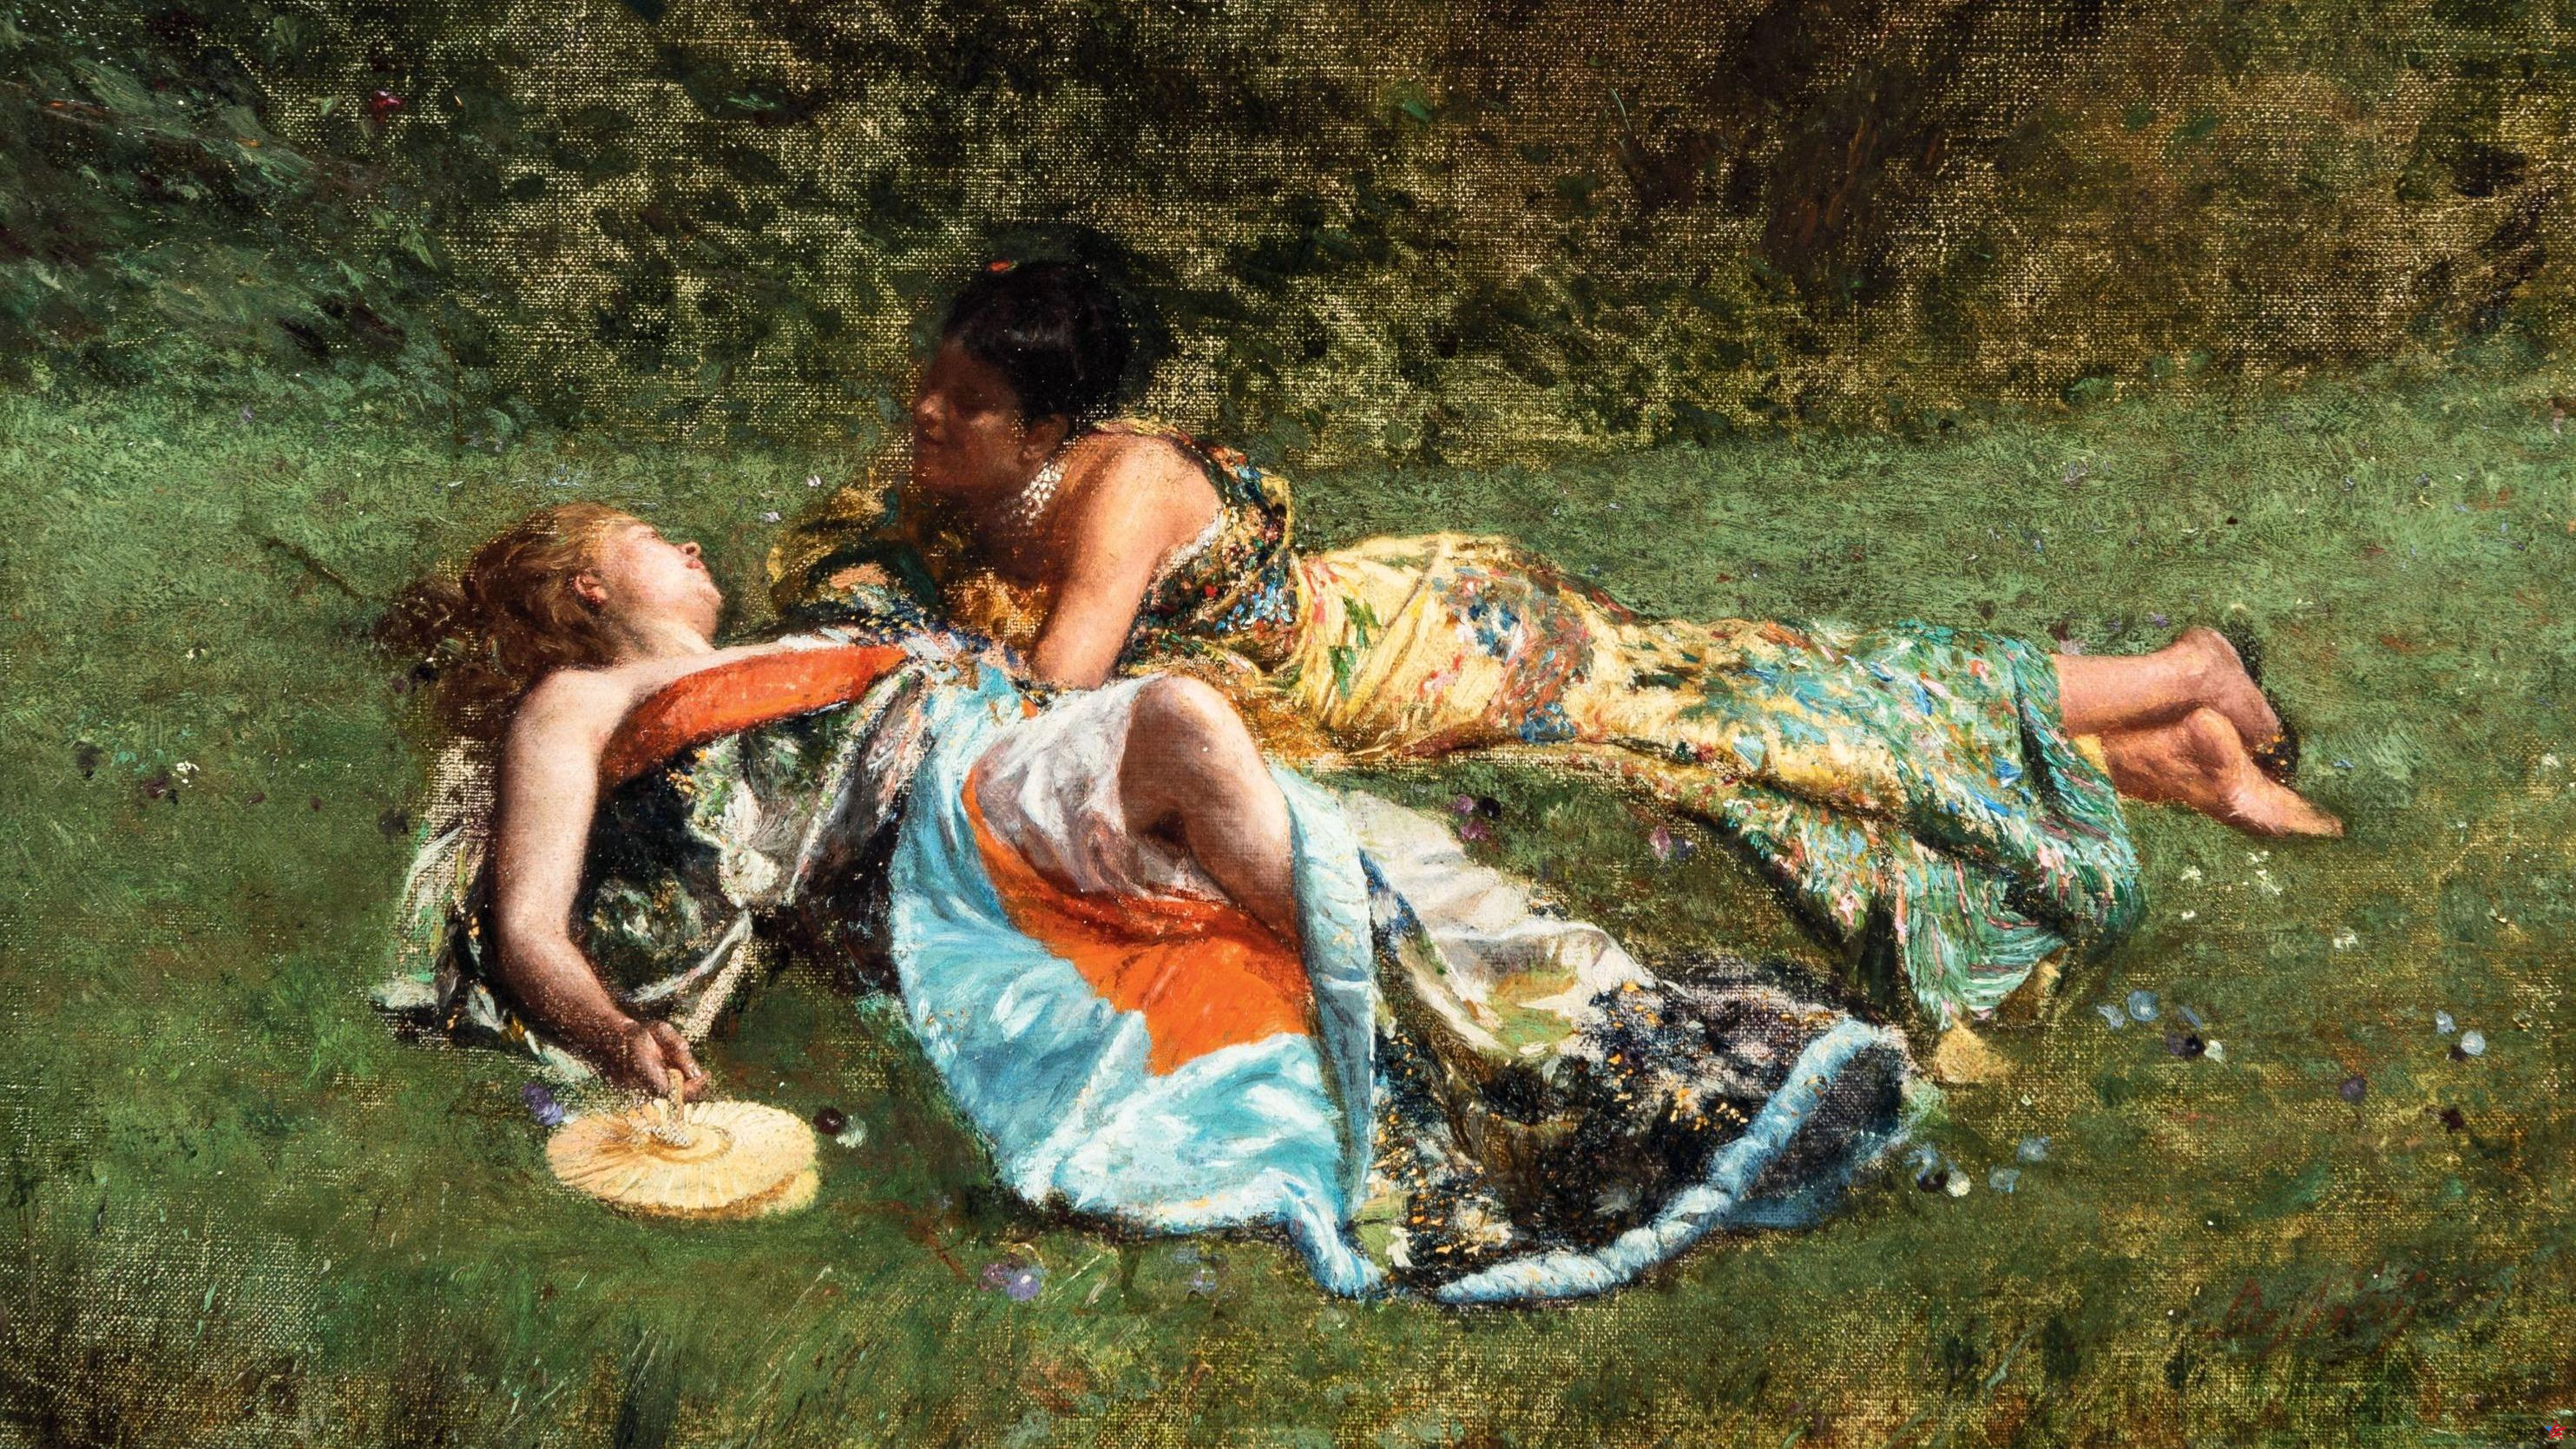 Nueve días de impresionismo: verano de 1870, Giuseppe De Nittis y Manet, nuestra preguerra